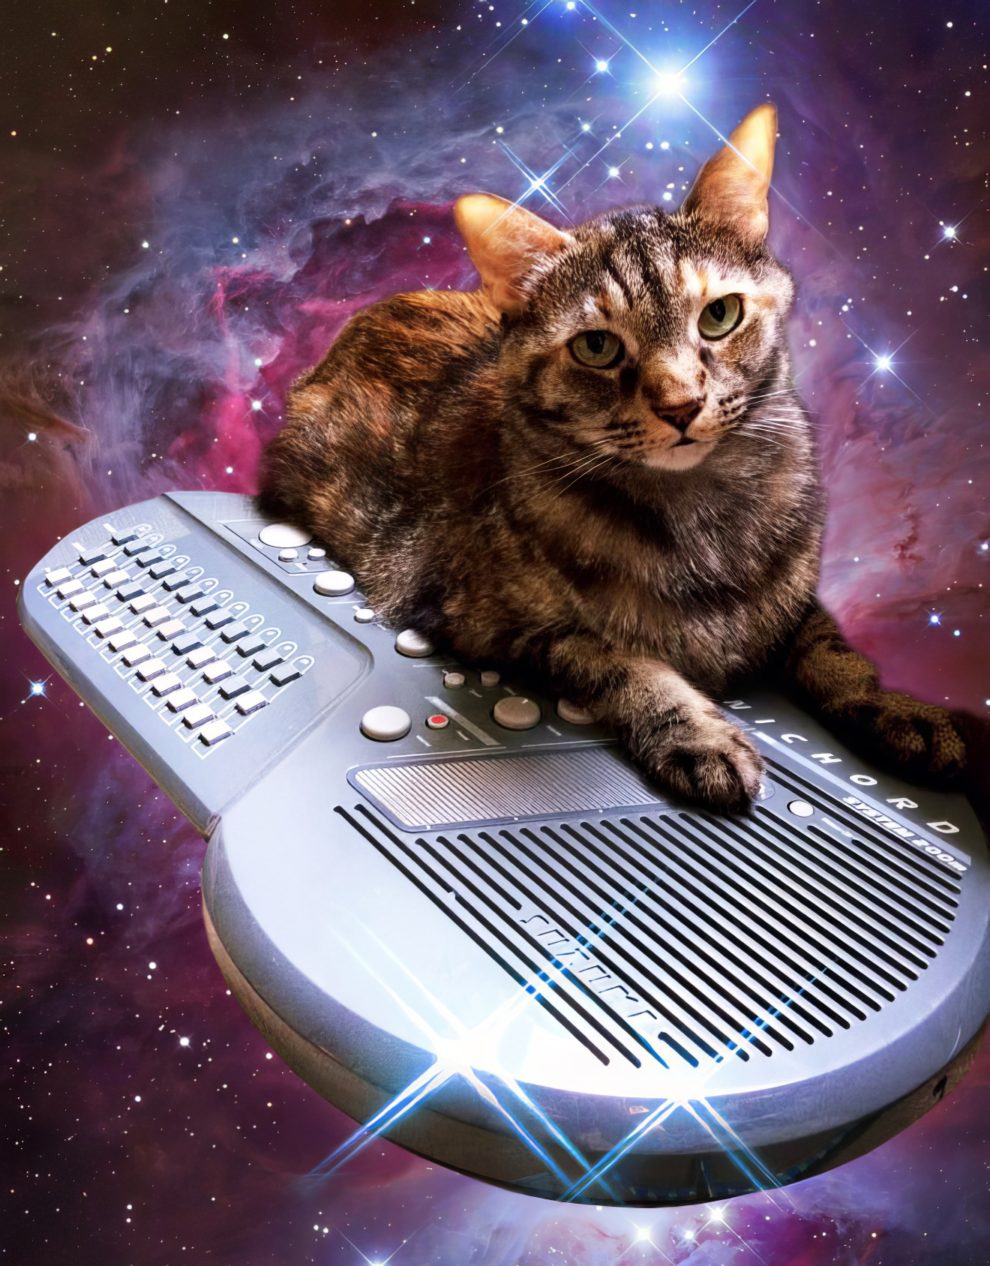 Музыка под кошку. Музыкальный кот. Синтезатор в космосе. Кот на синтезаторе. Музыкальный котенок.